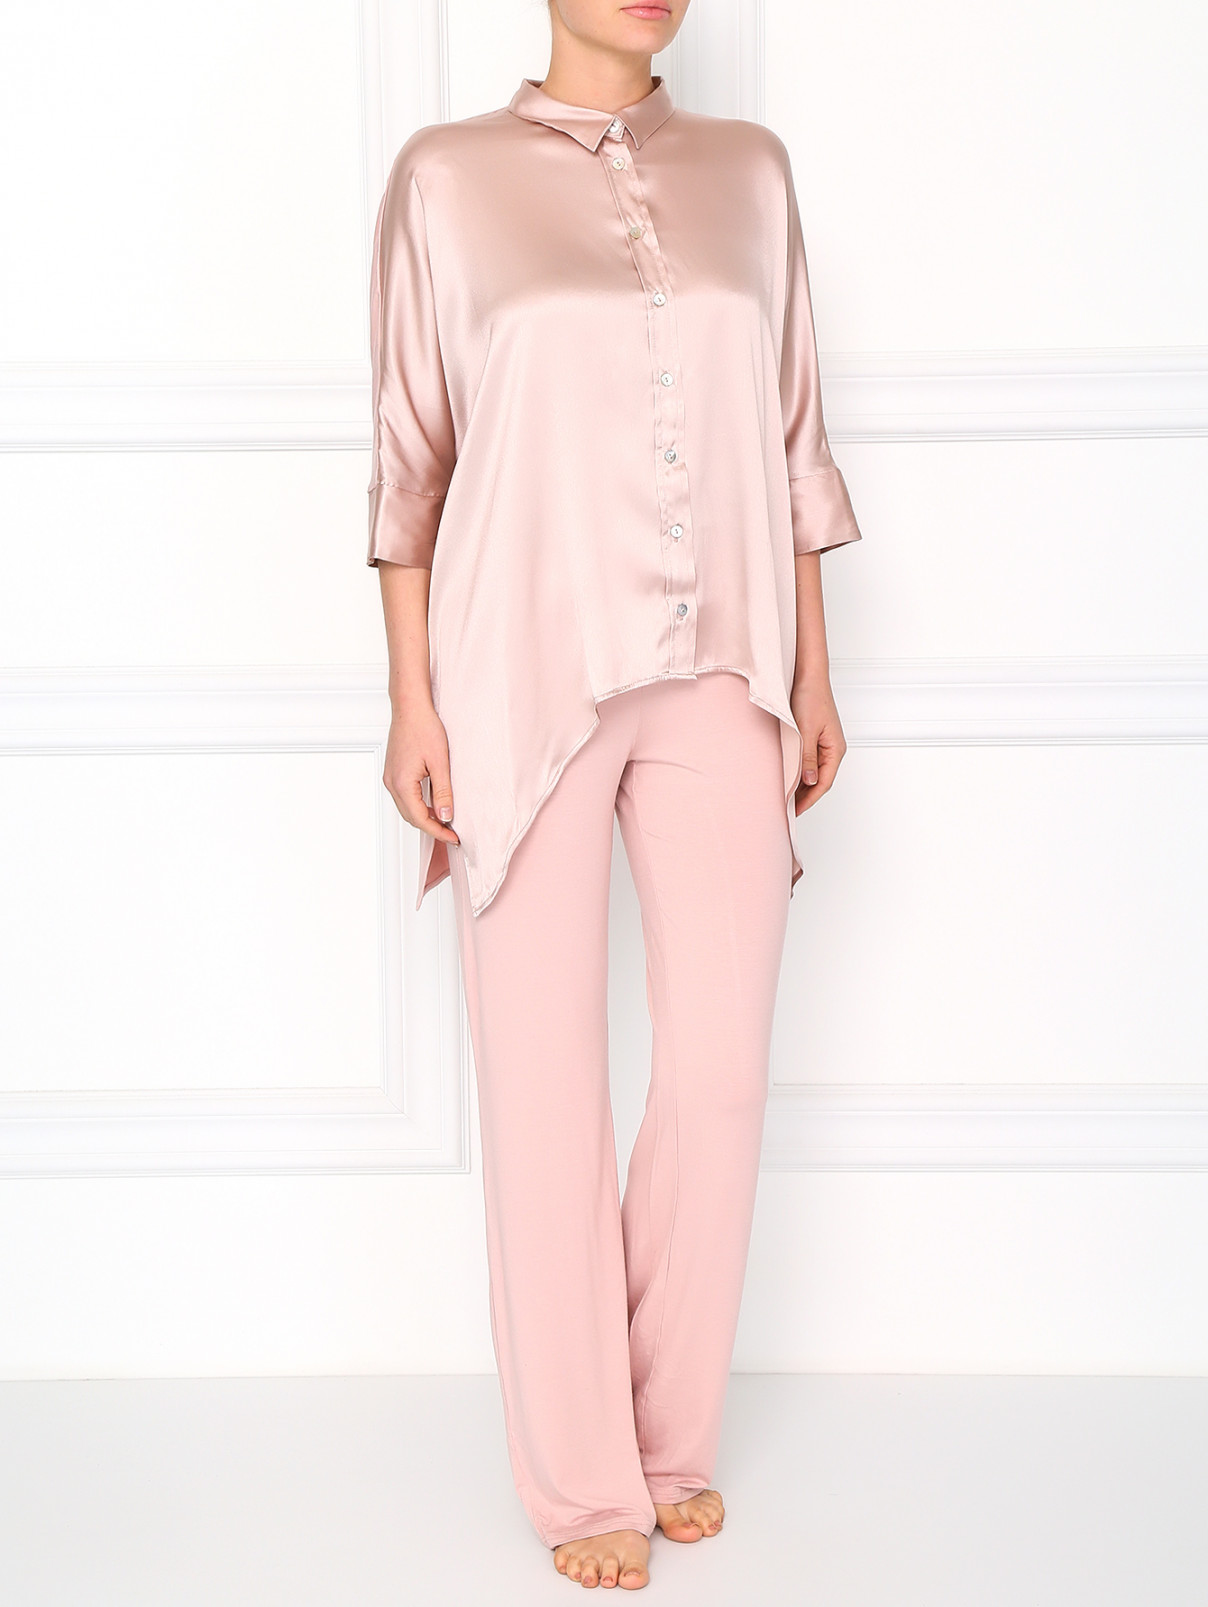 Шелковая рубашка свободного фасона Valery Prestige  –  Модель Общий вид  – Цвет:  Розовый